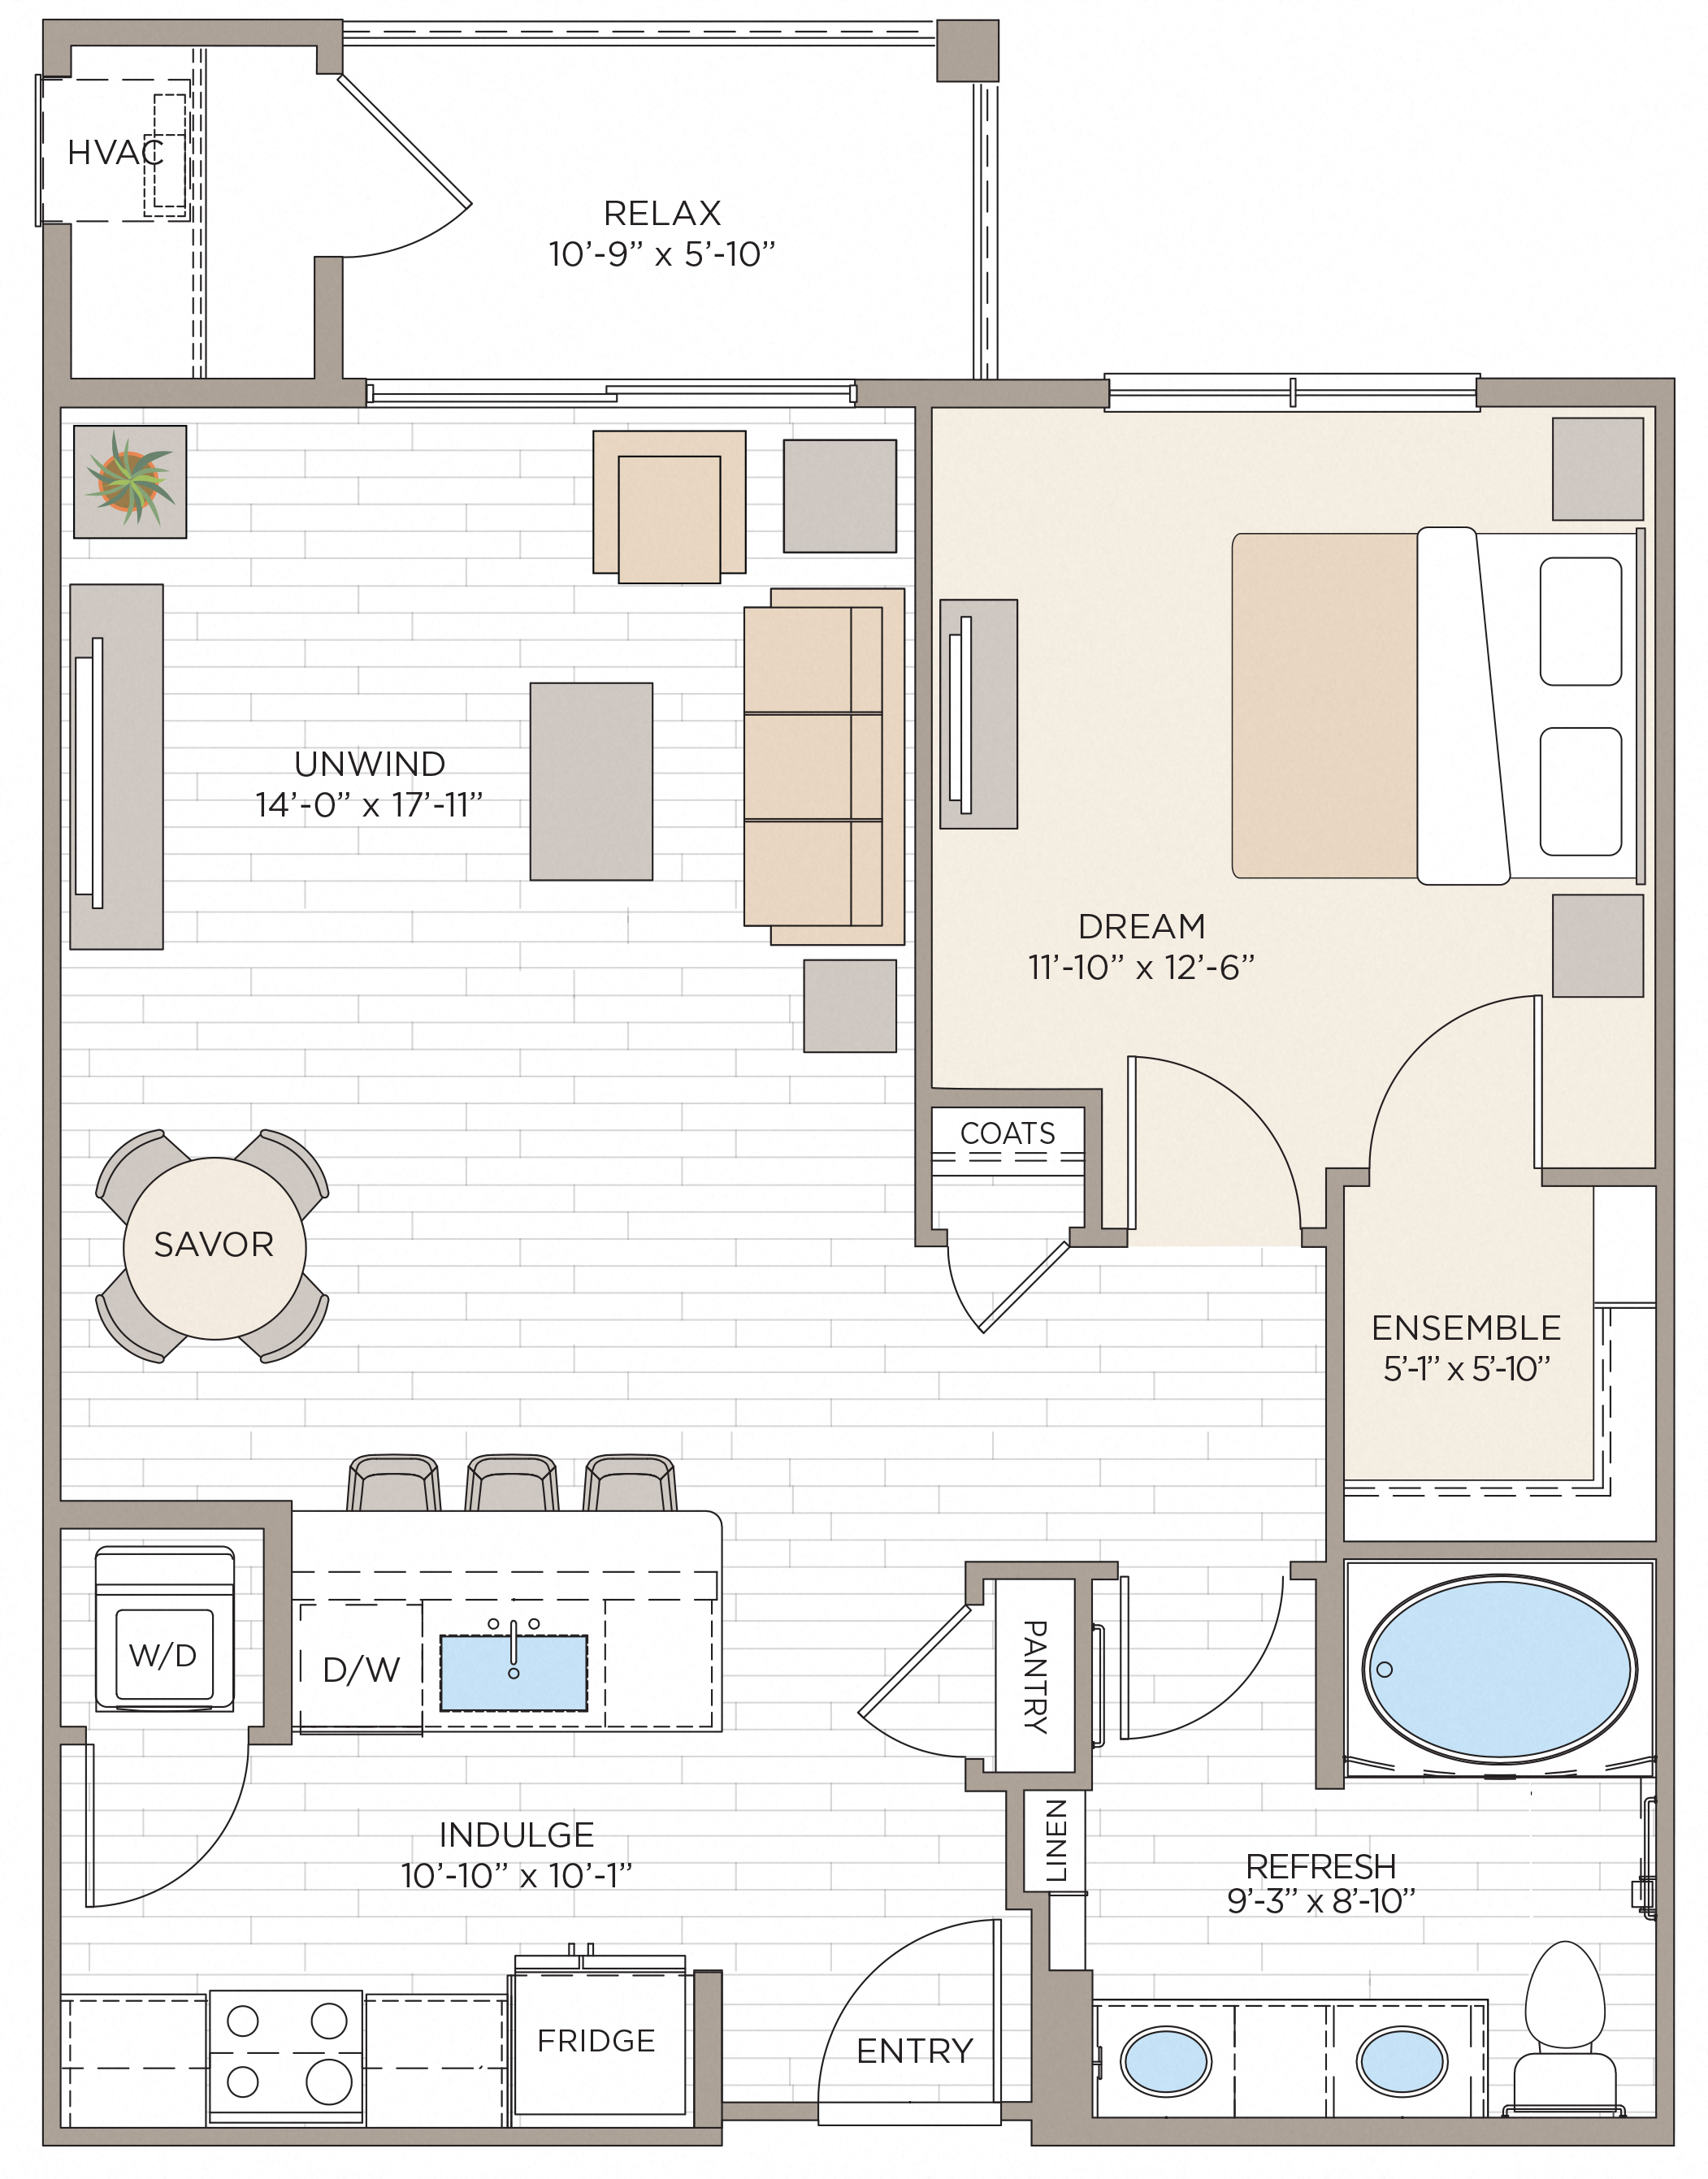 Floorplan for Apartment #14212, 1 bedroom unit at Halstead Maynard Crossing